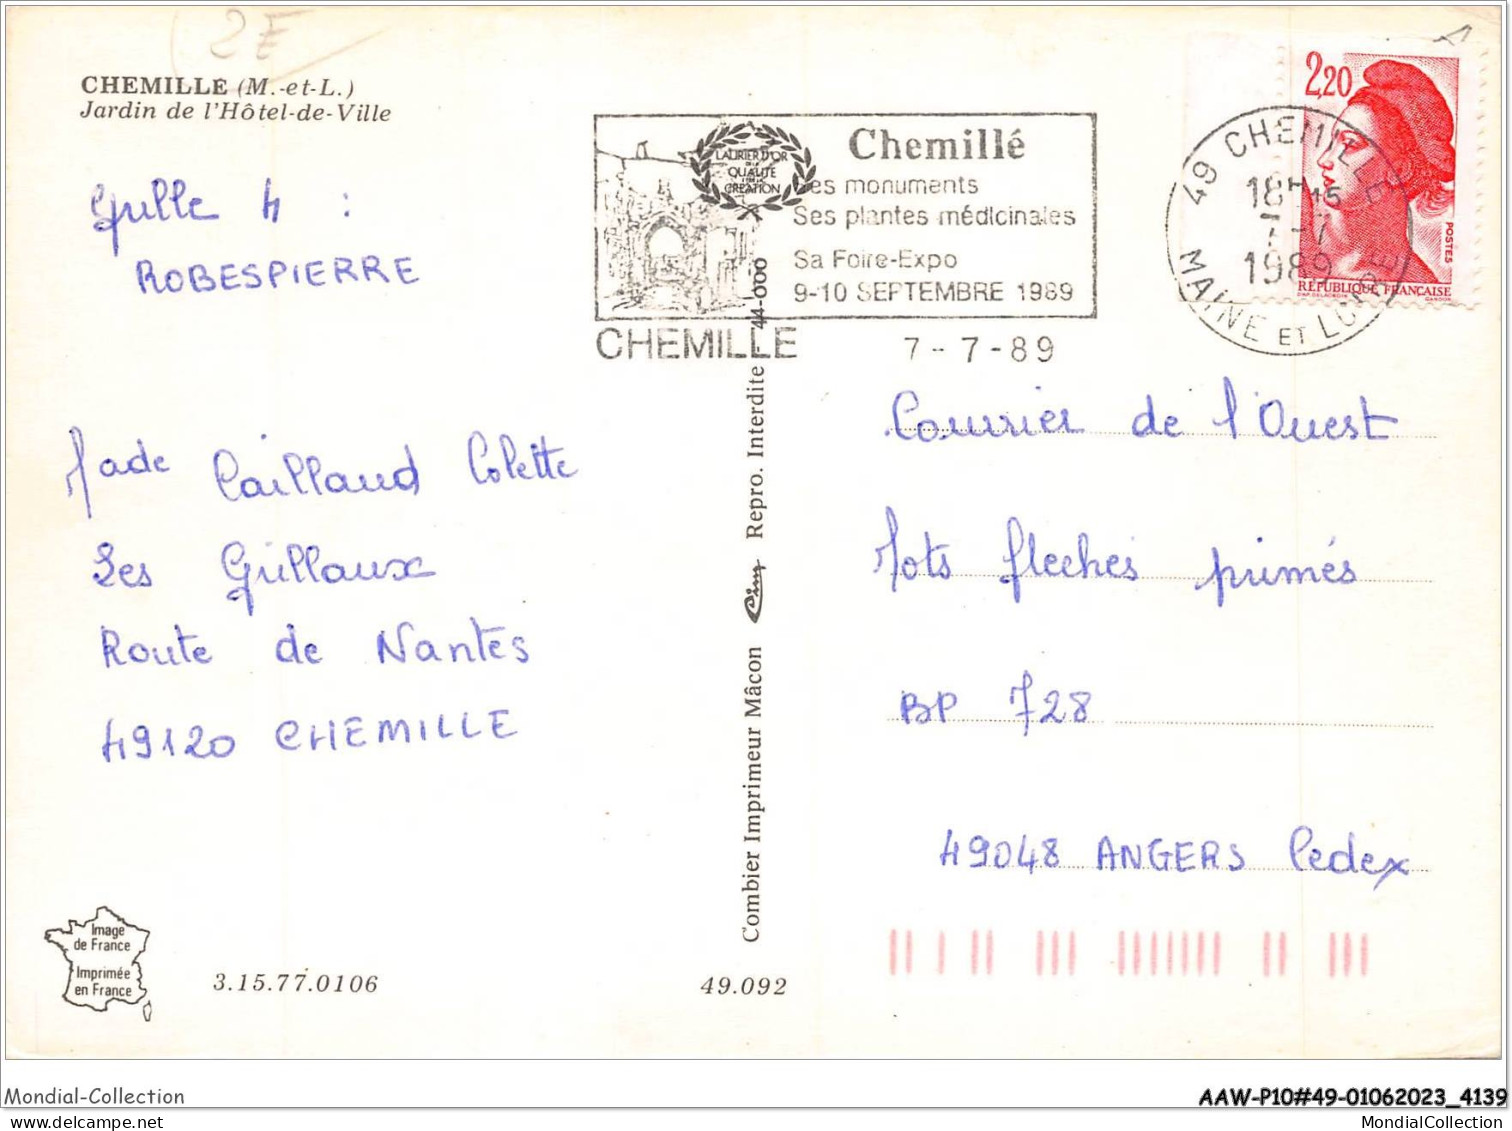 AAWP10-49-0856 - CHEMILLE - Jardin De L'Hôtel-de-ville - Chemille